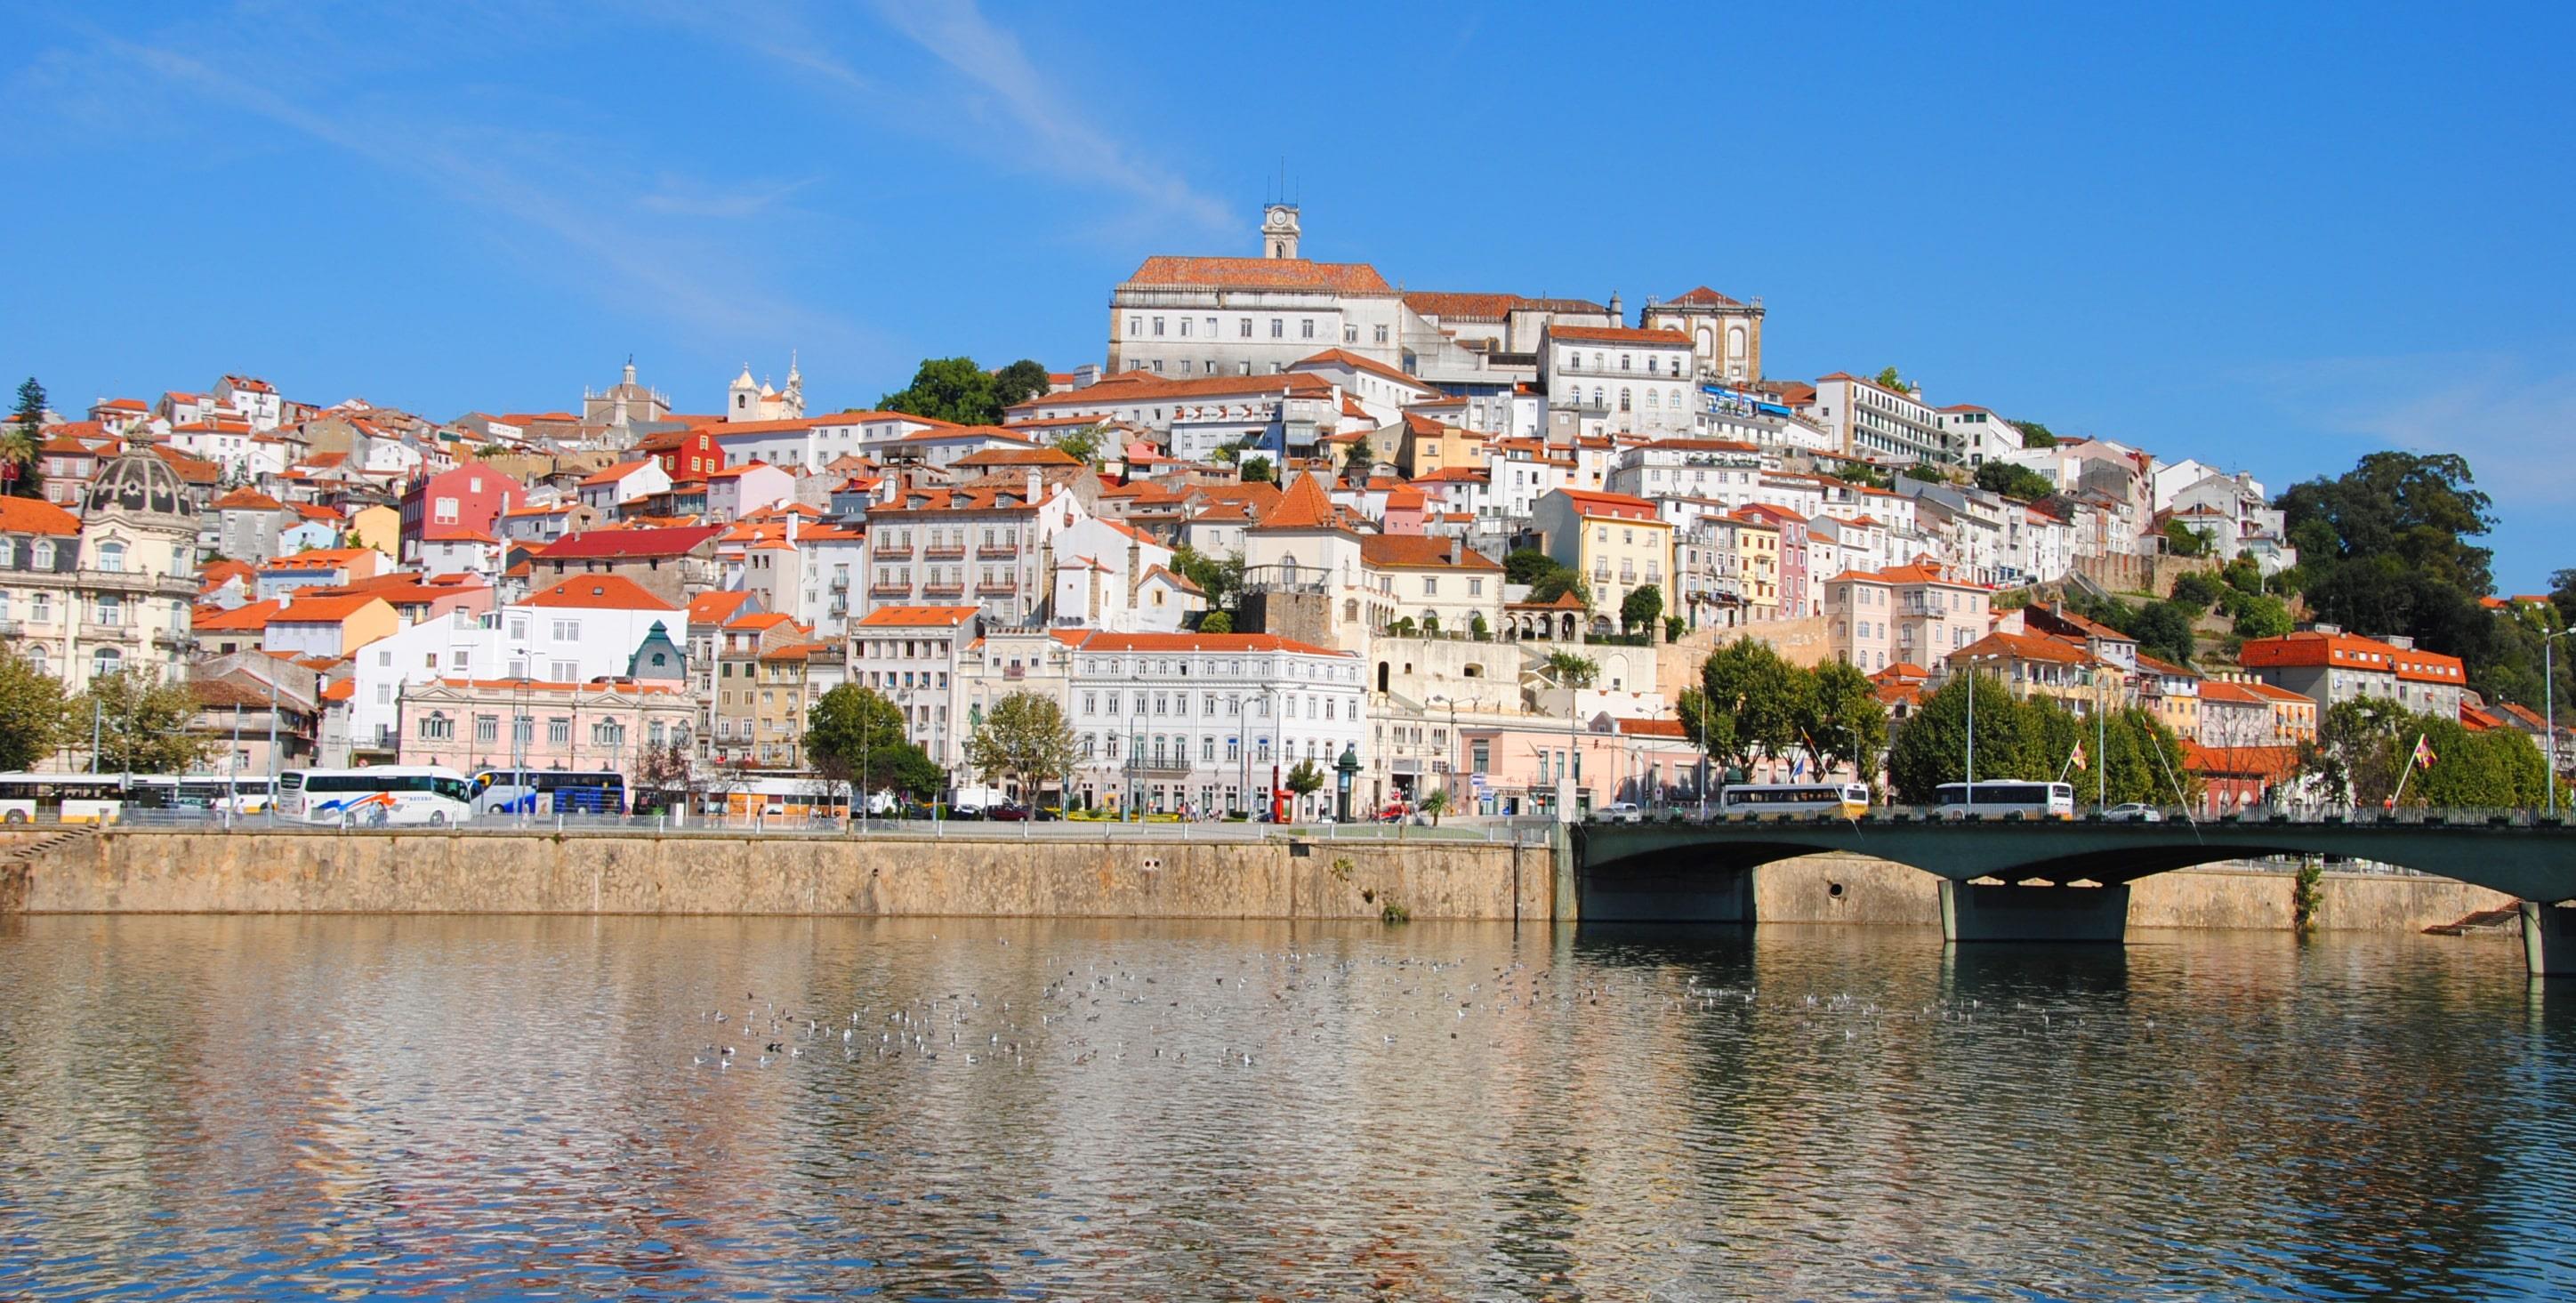 Free Tour Leyendas y Tradiciones de Coimbra